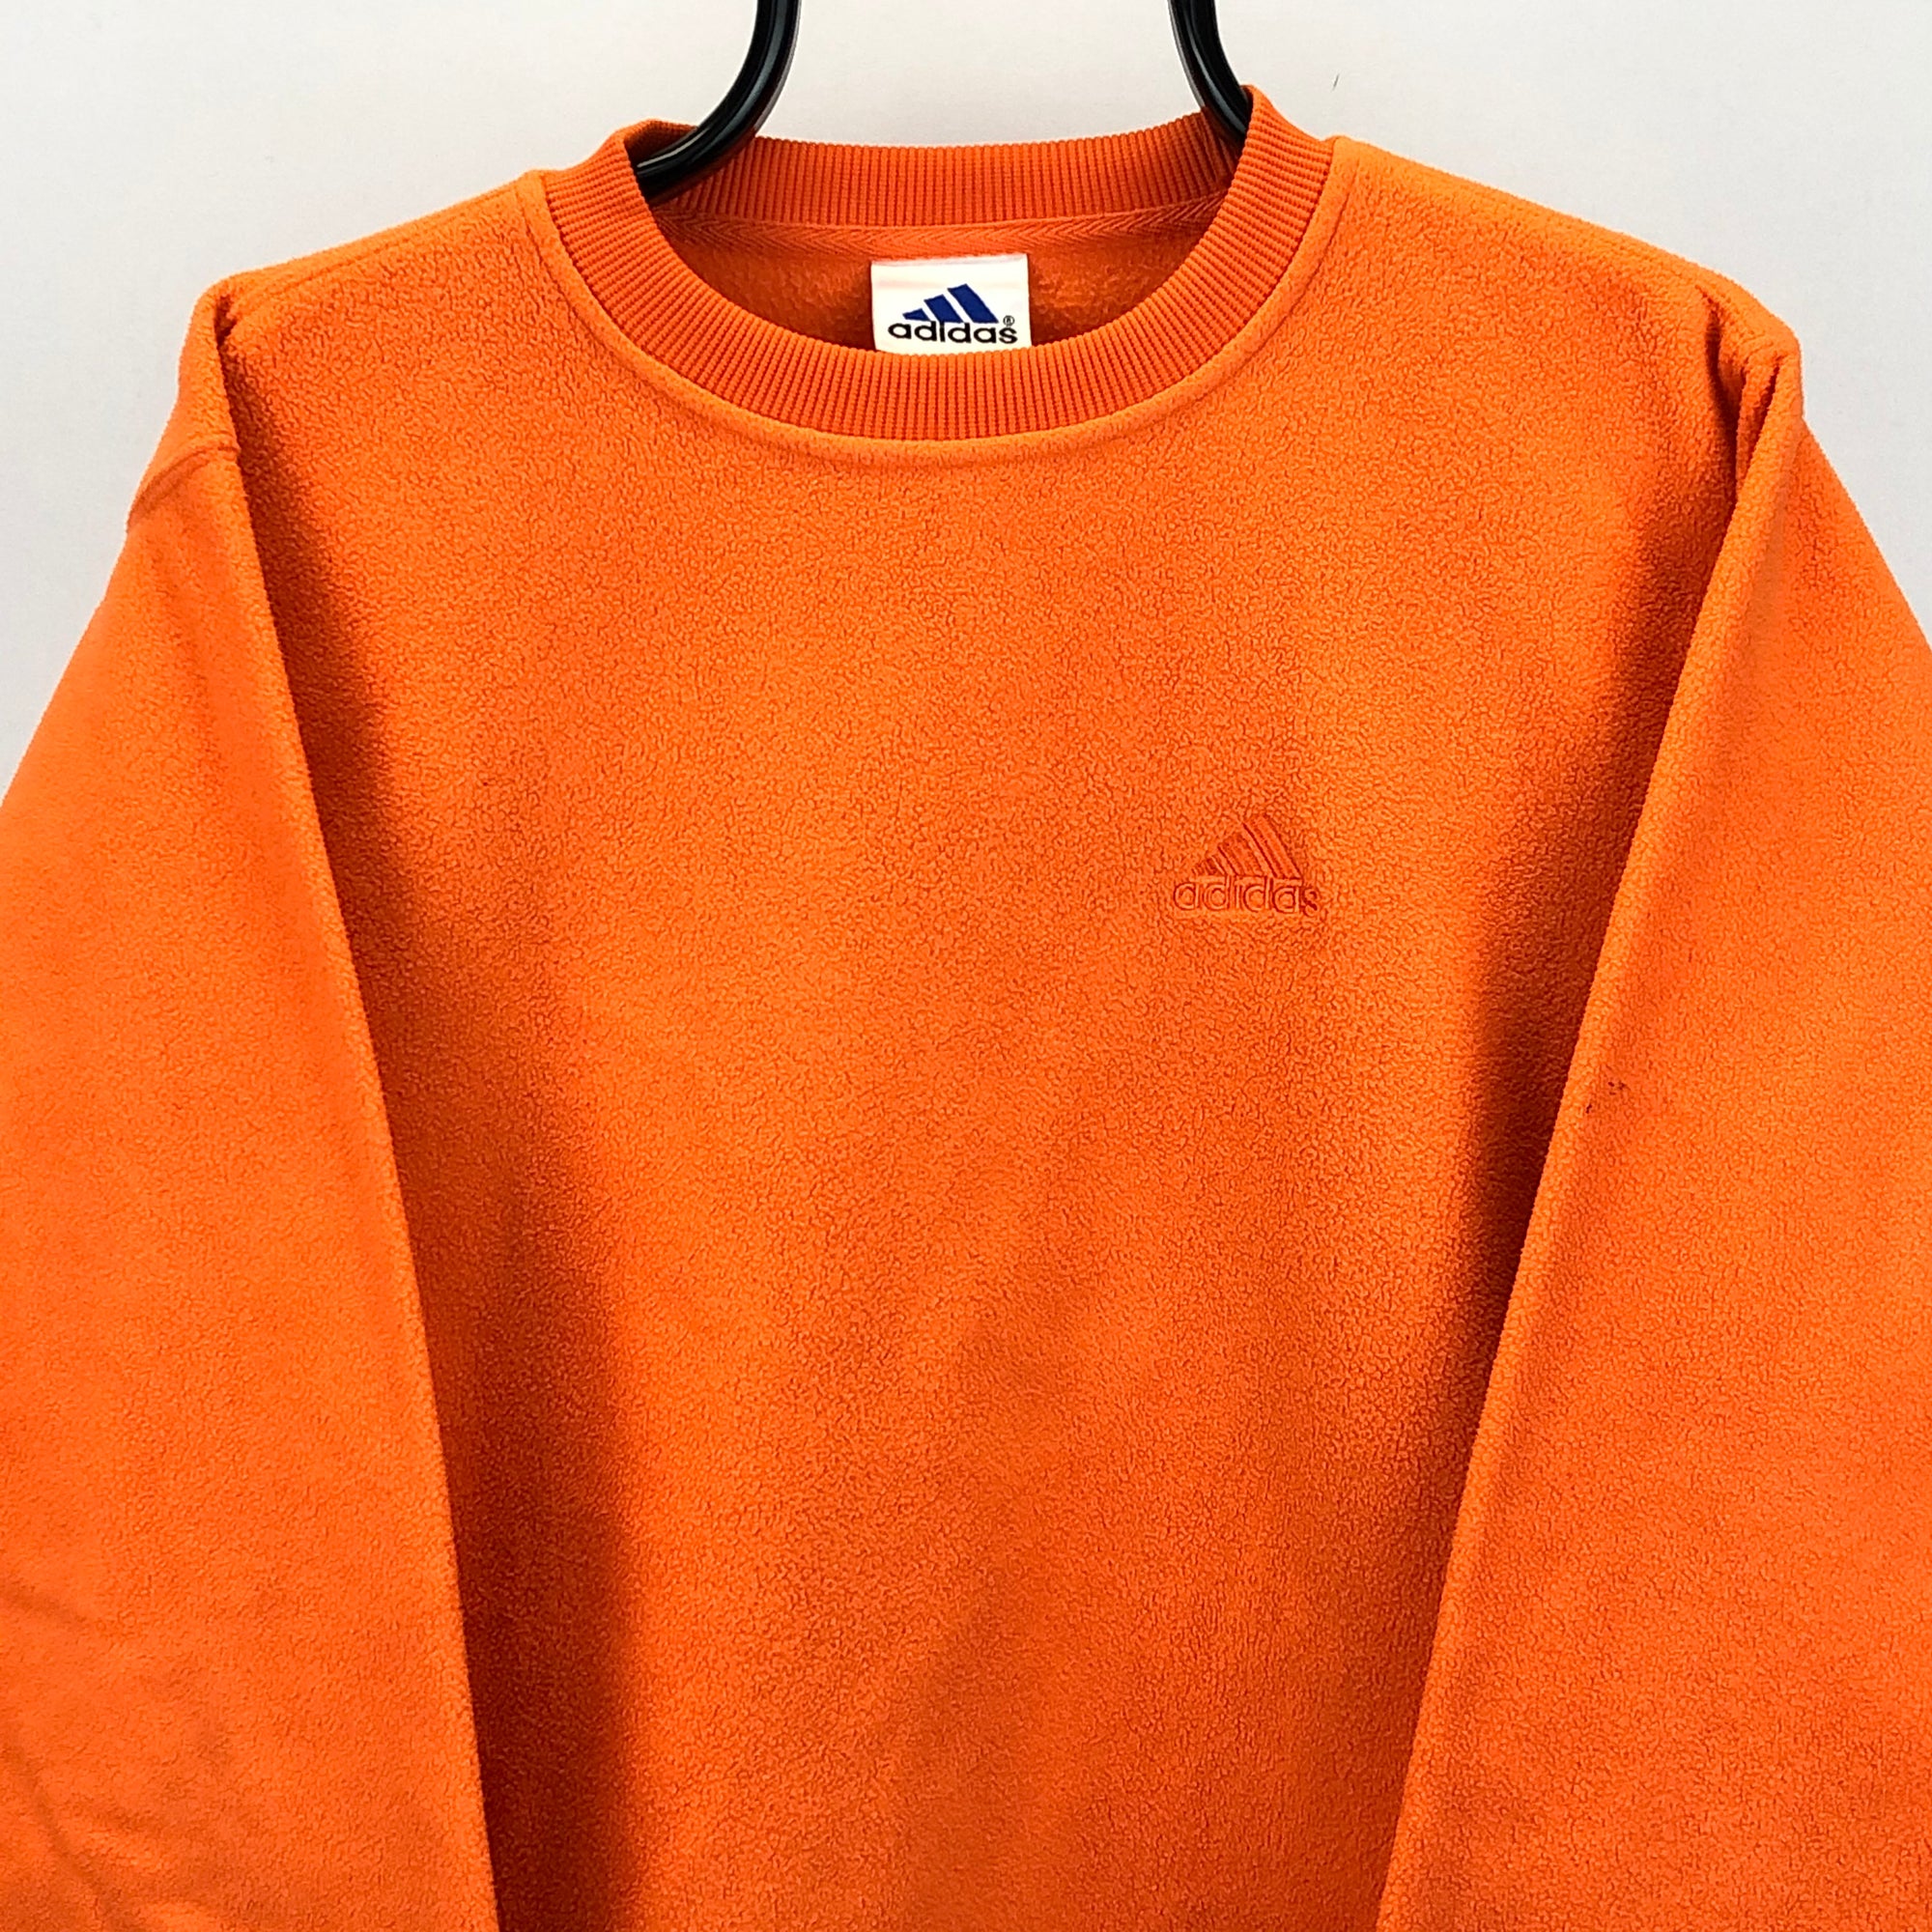 Vintage 90s Adidas Fleece Sweatshirt in Orange - Men's Medium/Women's Large